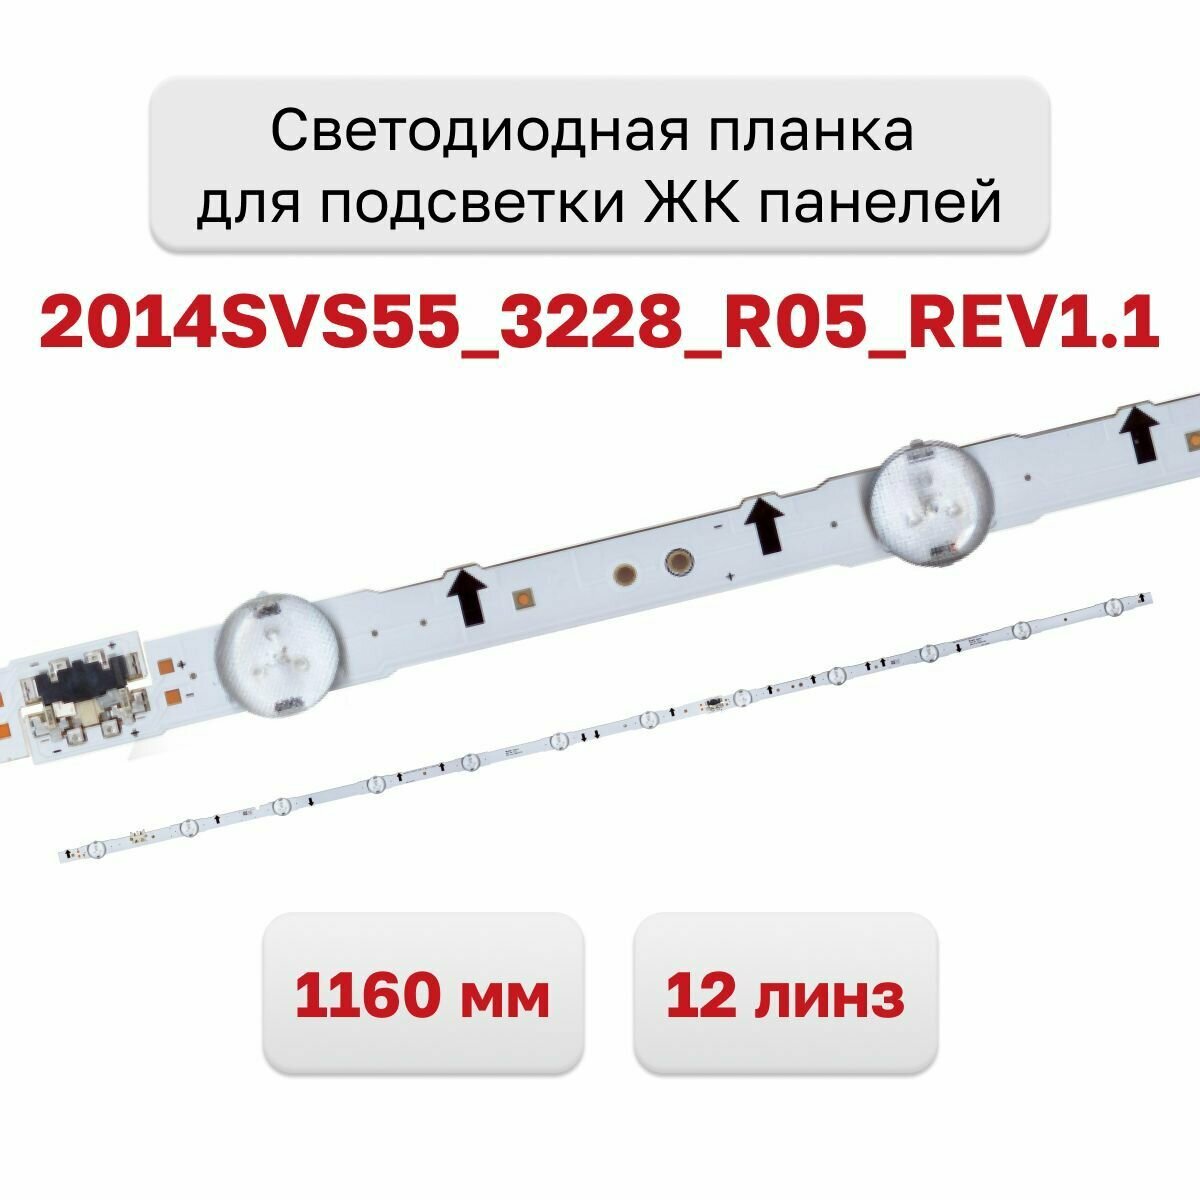 Светодиодная планка для подсветки ЖК панелей 2014SVS55_3228_R05_REV1.1, 1160 мм. 12 линз